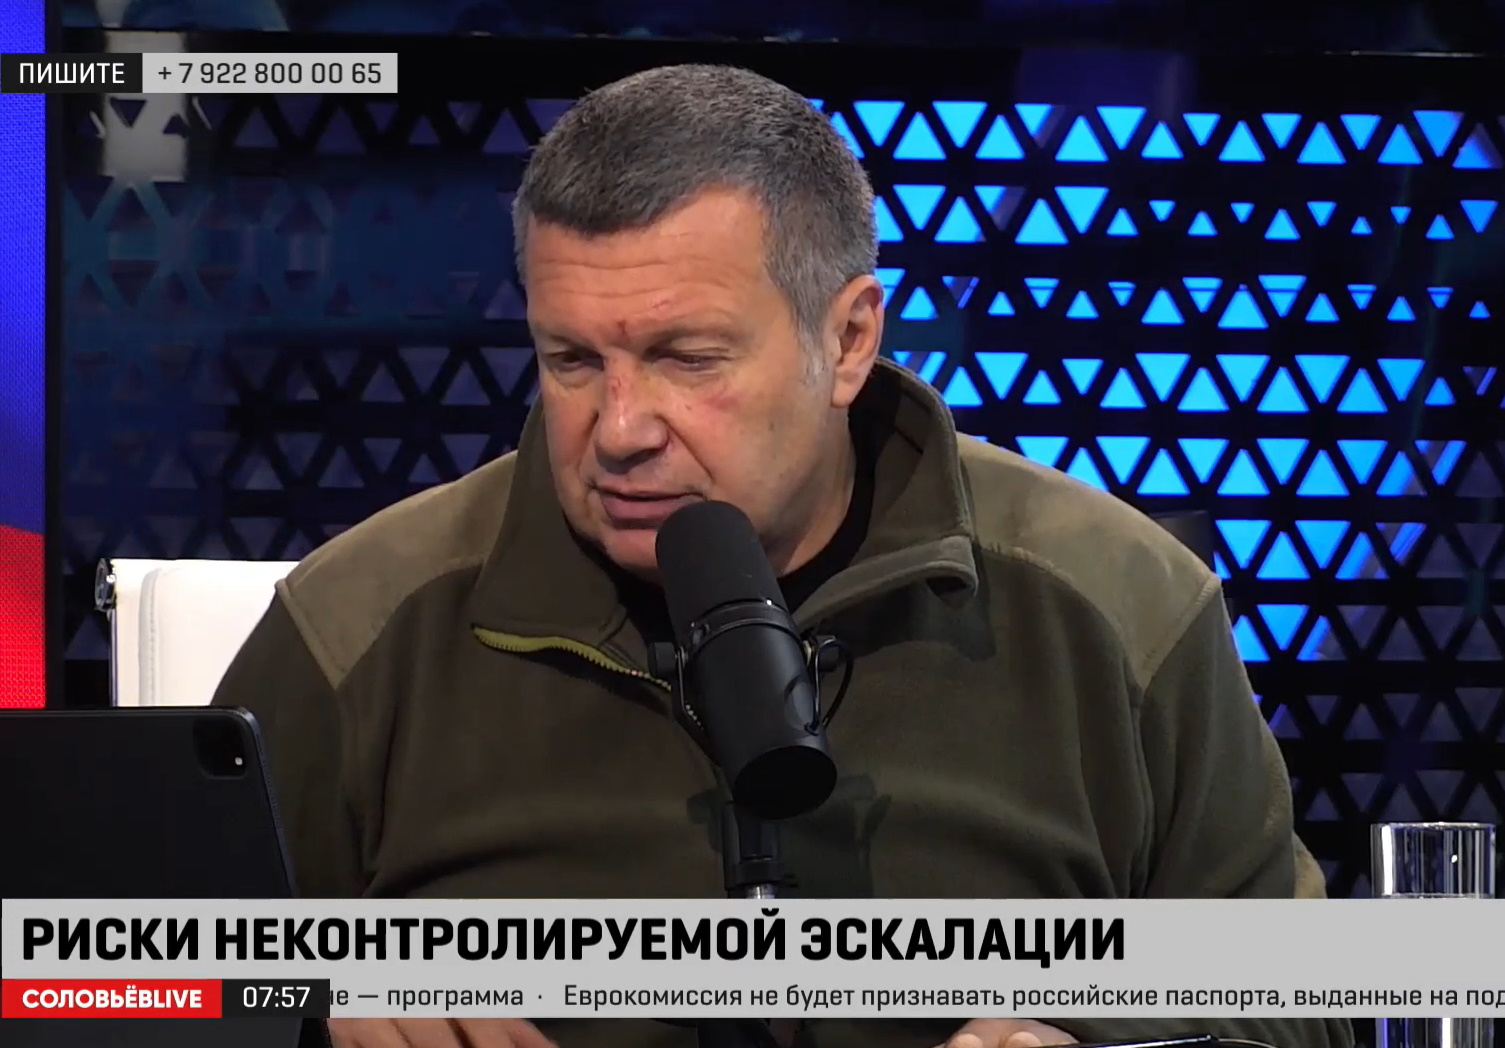 Жуткие синяки и царапины: Соловьев показал изувеченное лицо после угрозы Пугачевой «набить морду»